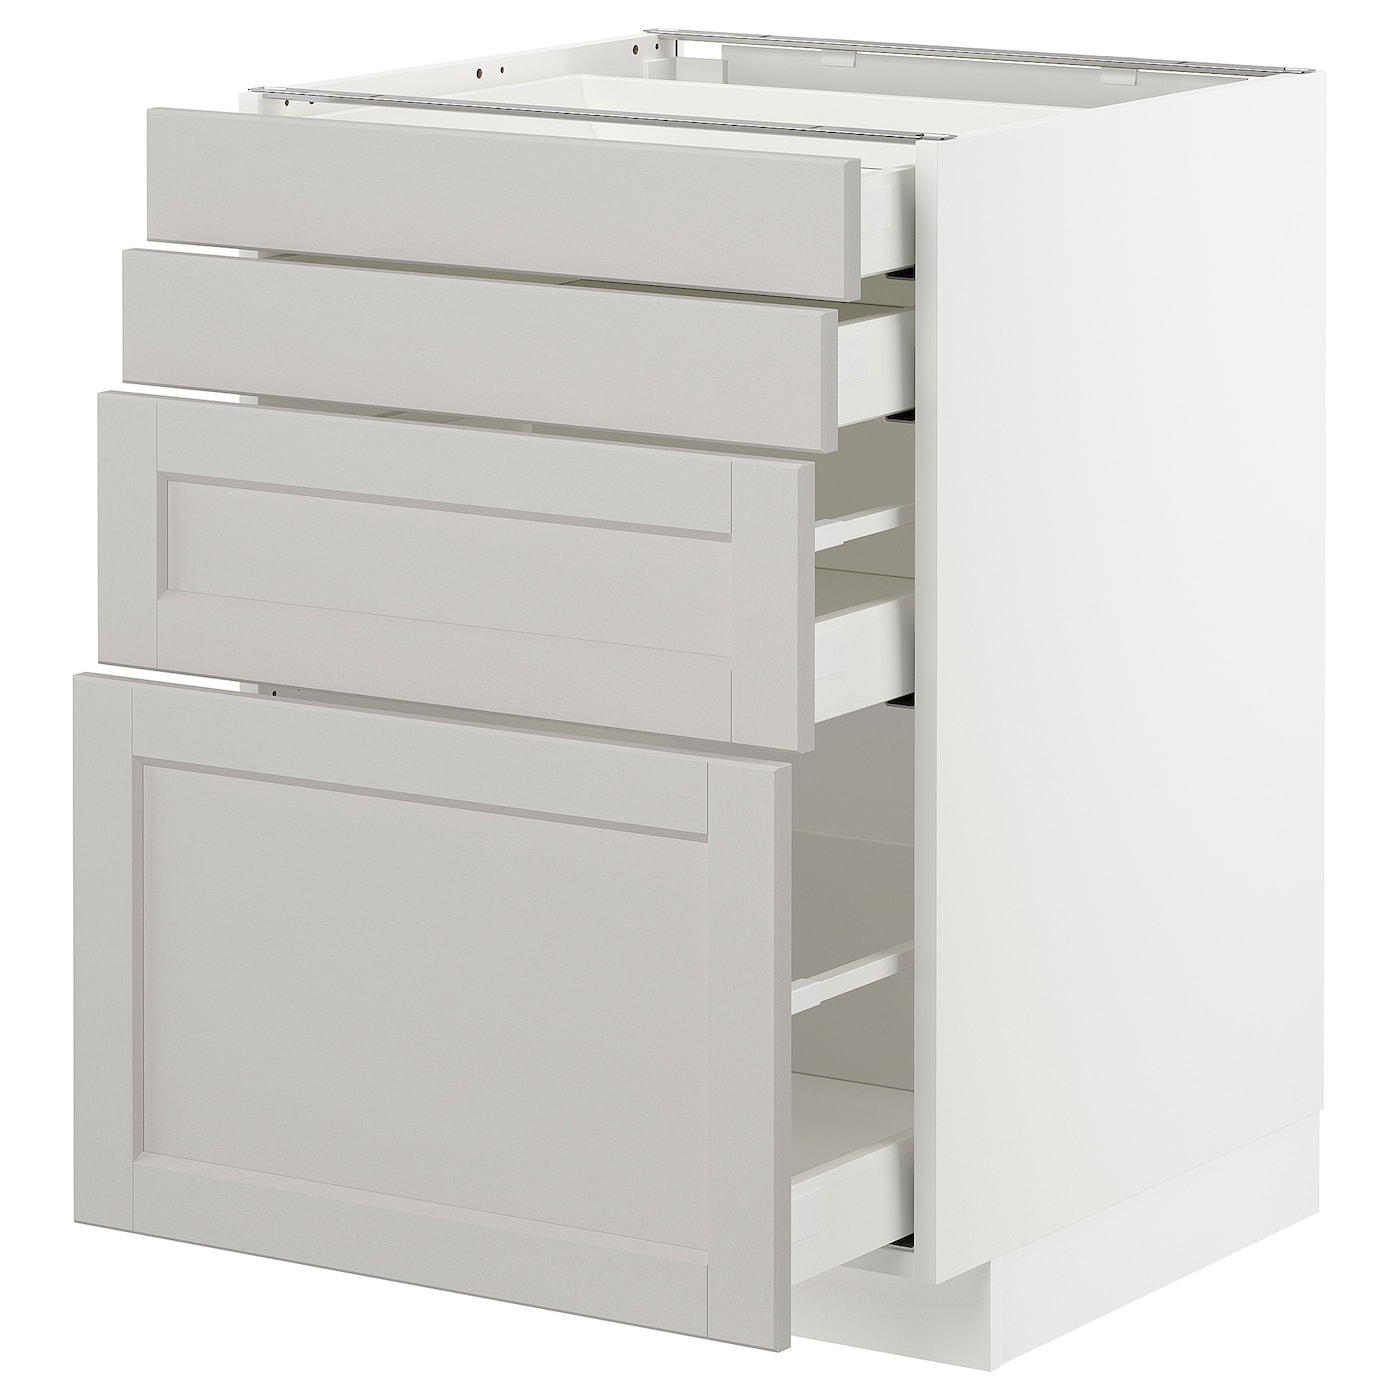 Напольный кухонный шкаф  - IKEA METOD MAXIMERA, 88x61,9x60см, белый/светло-серый, МЕТОД МАКСИМЕРА ИКЕА